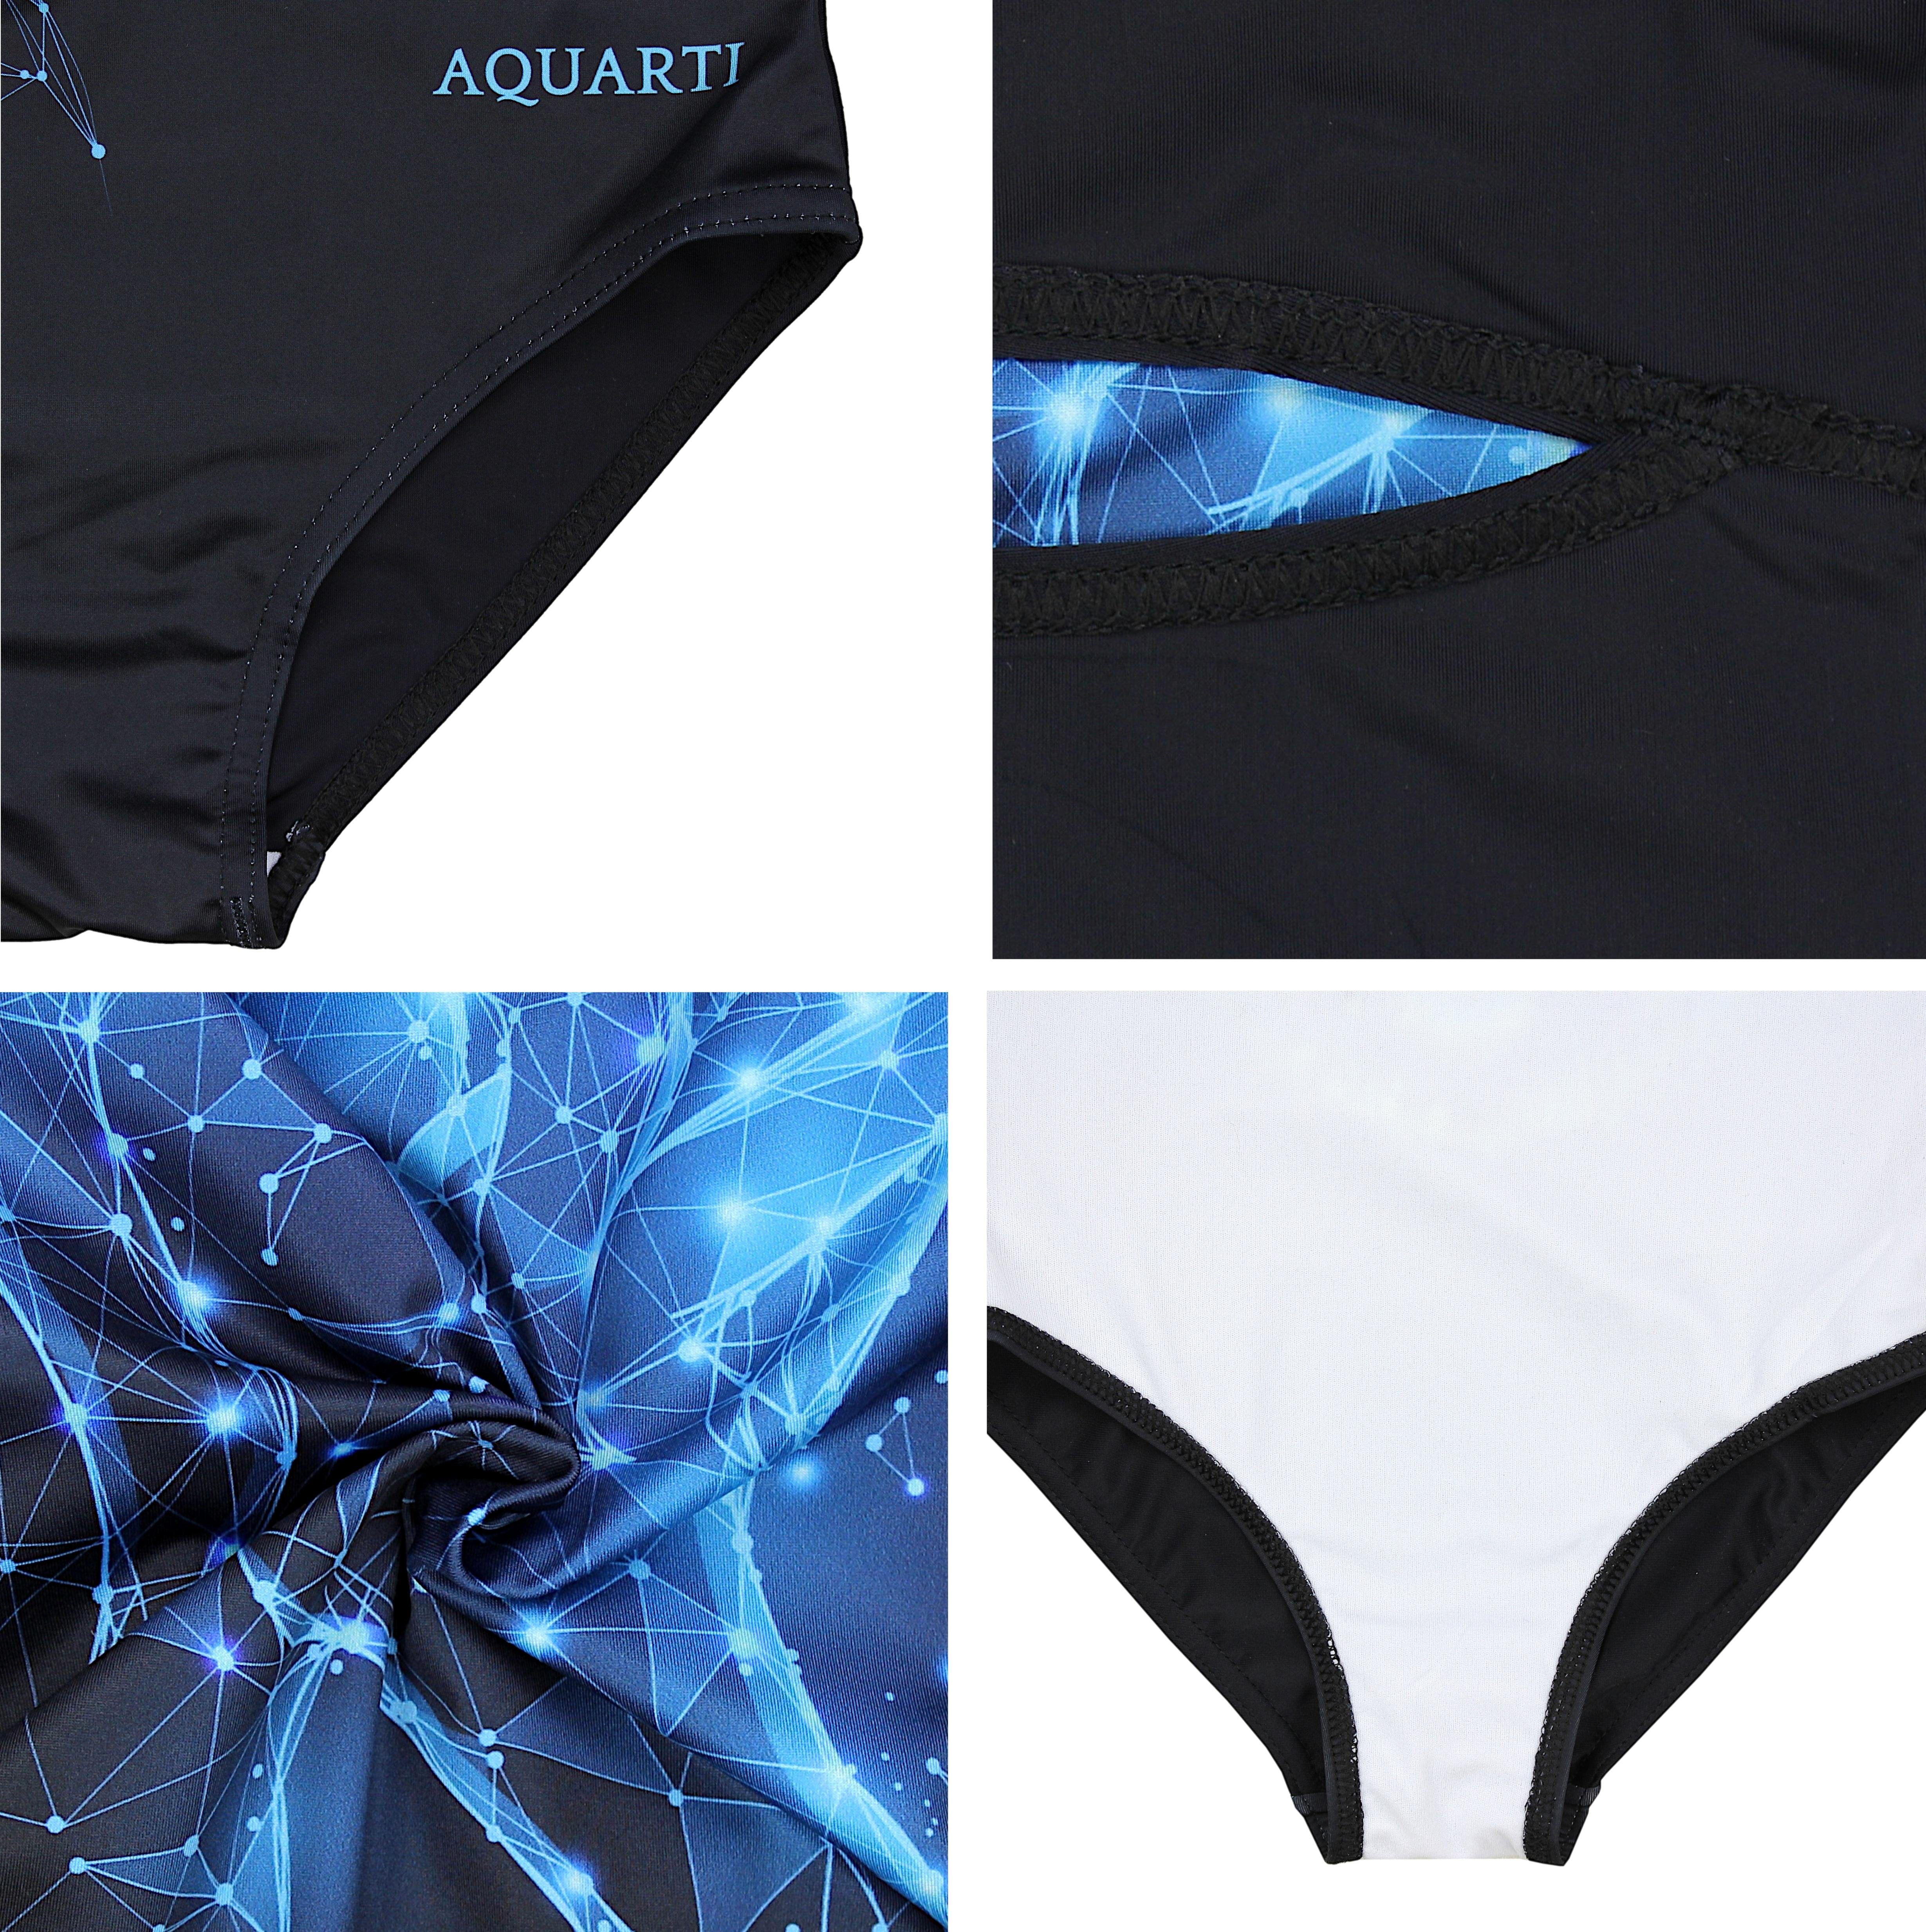 Aquarti Badeanzug Aquarti Mädchen Schwarz Print Einhorn Blau Ringerrücken Badeanzug mit 